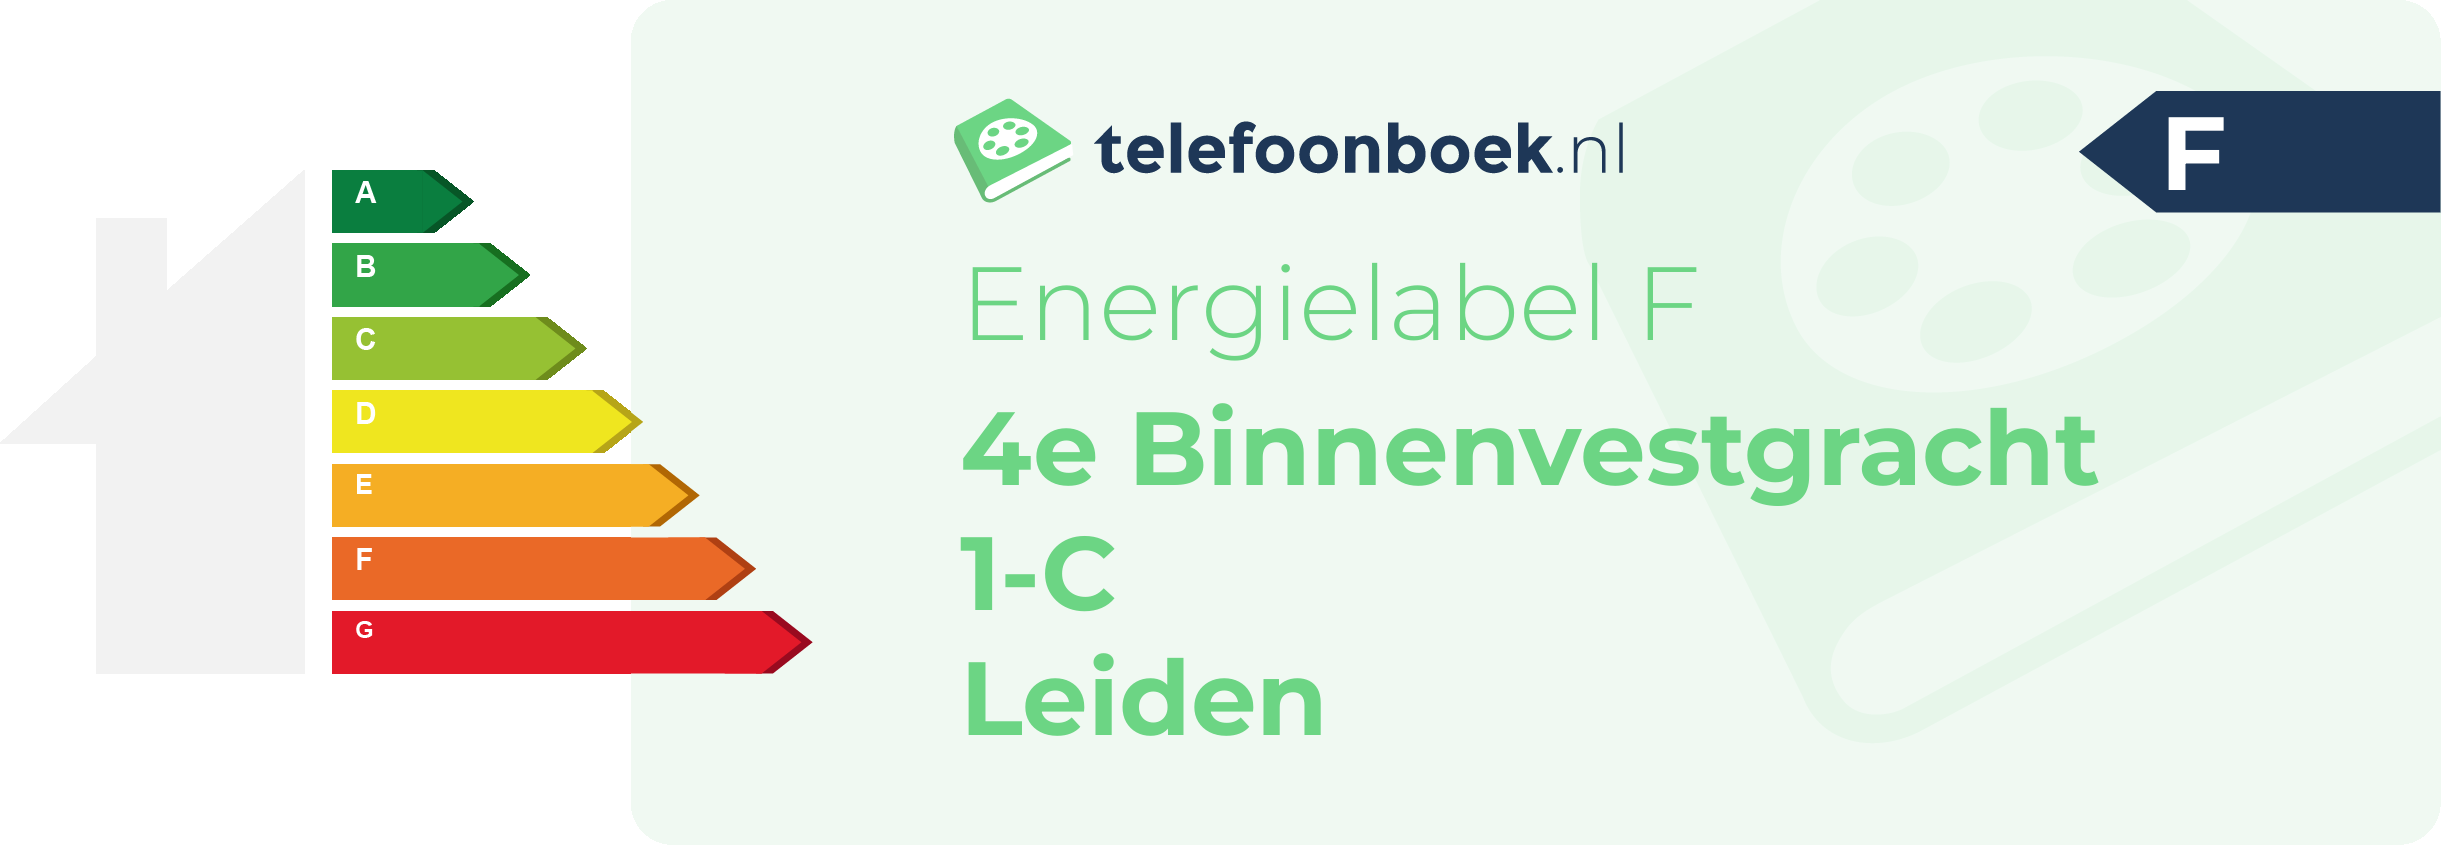 Energielabel 4e Binnenvestgracht 1-C Leiden